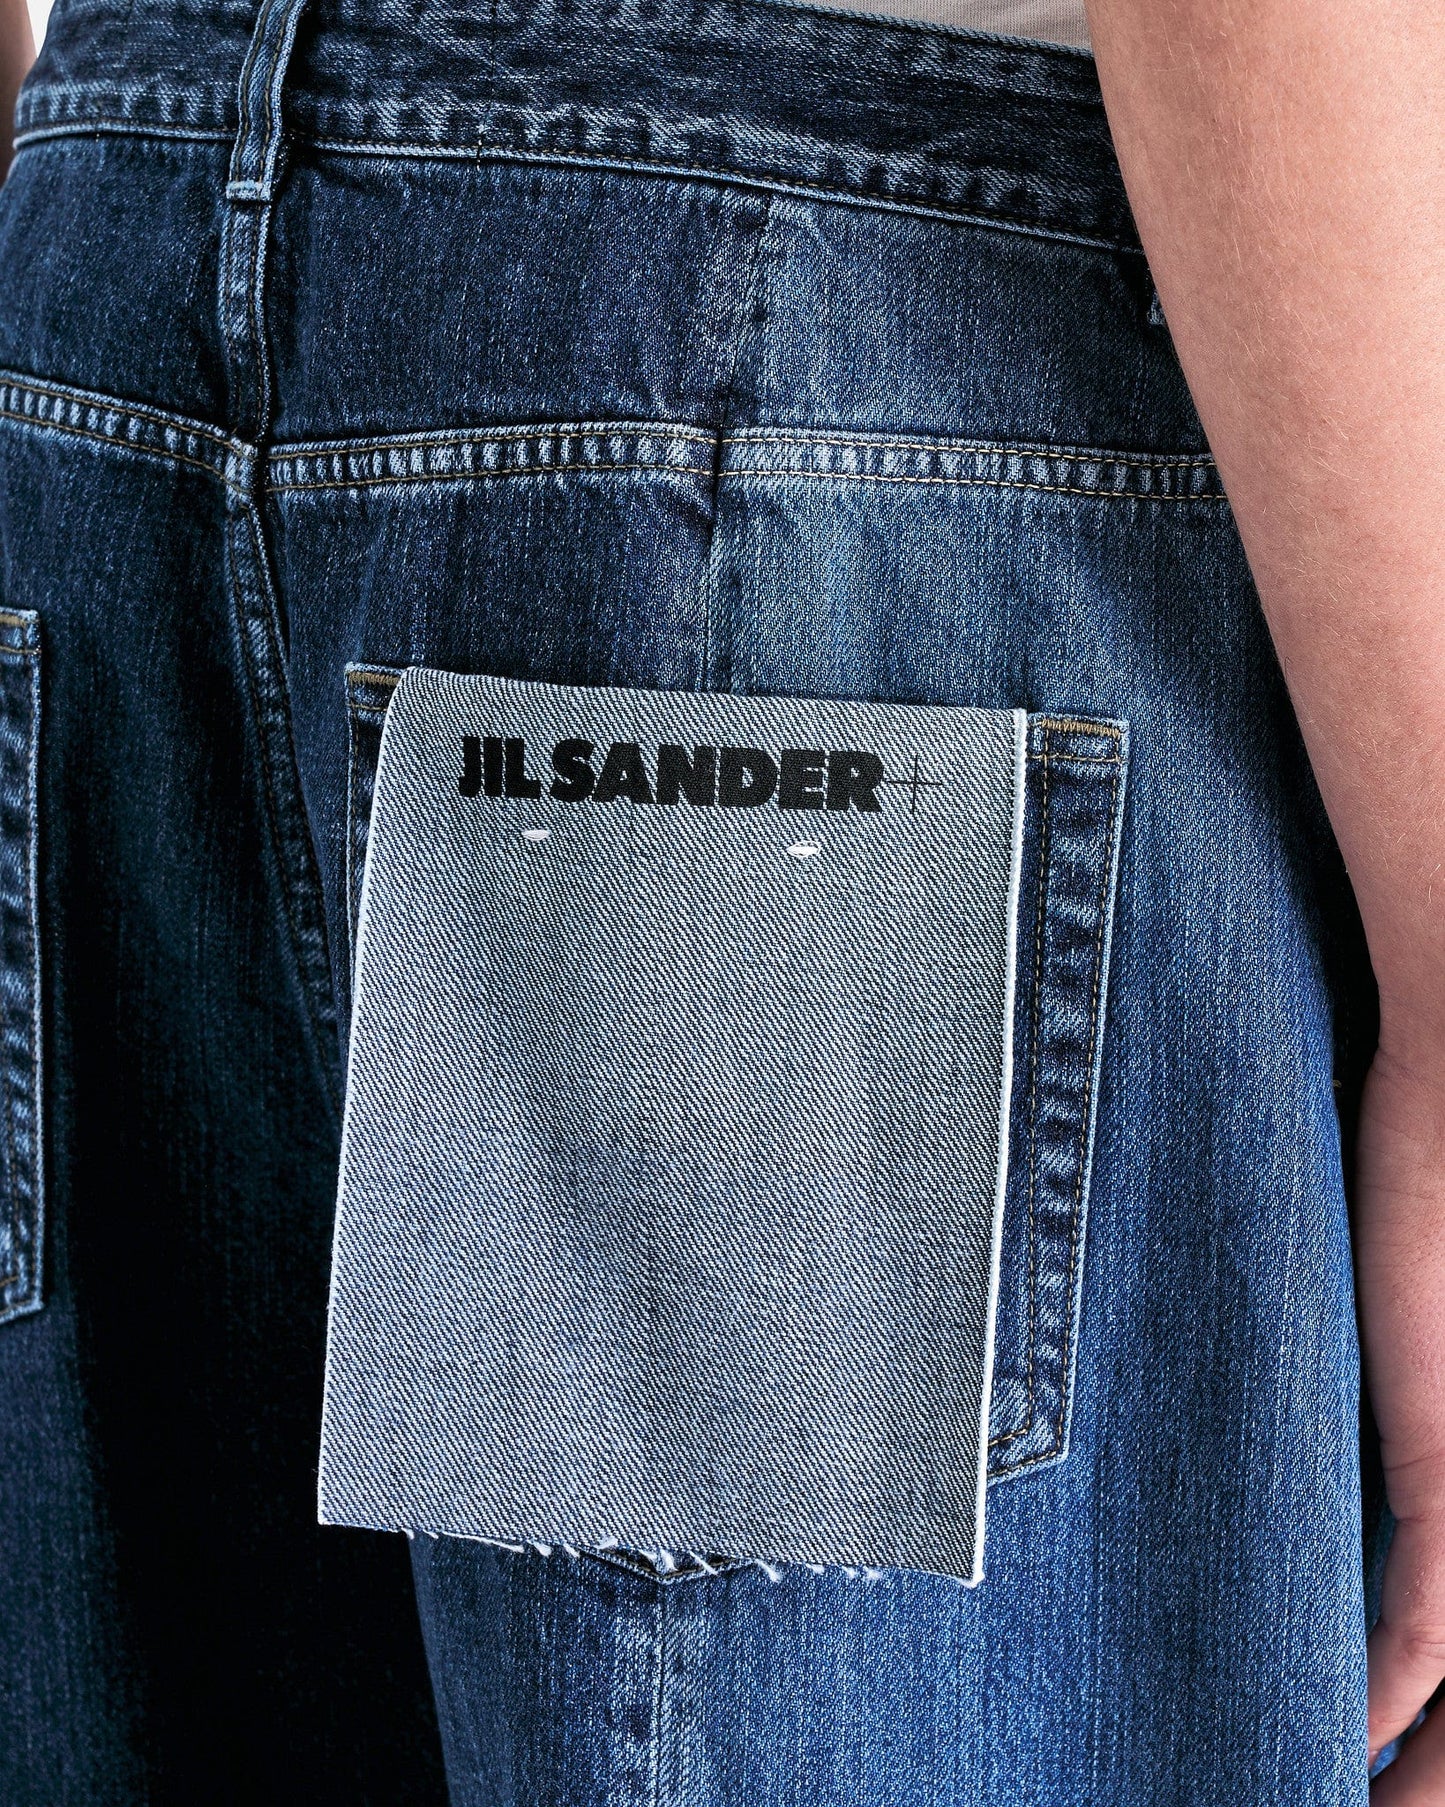 Jil Sander Men's Jeans Five Pocket Washed Raw Denim in Cobalt Light Blue